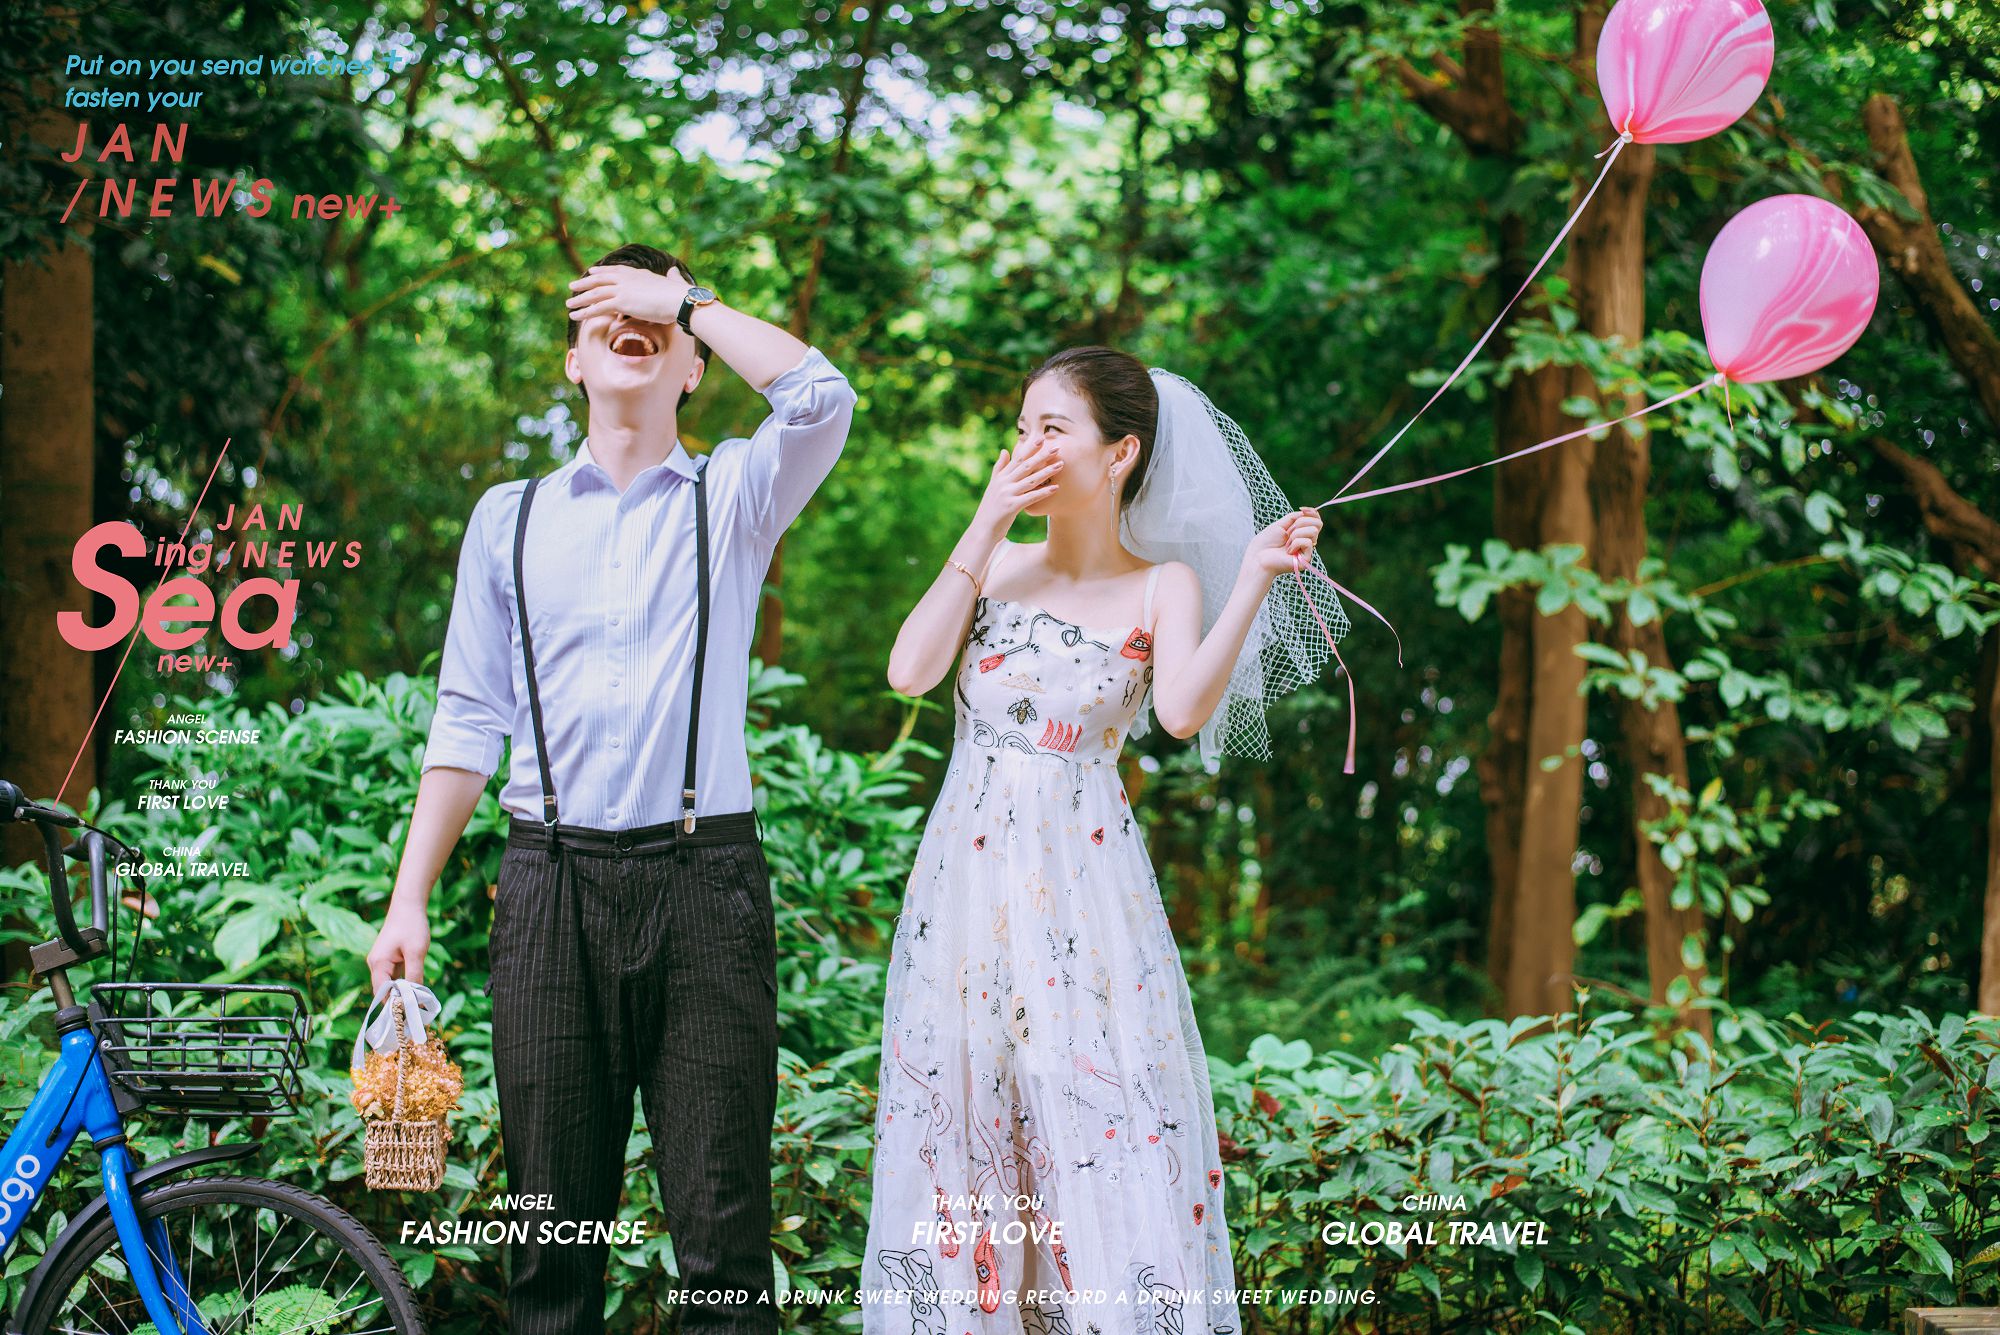 2018年11月广州结婚照,茂名婚纱照,婚纱照图片